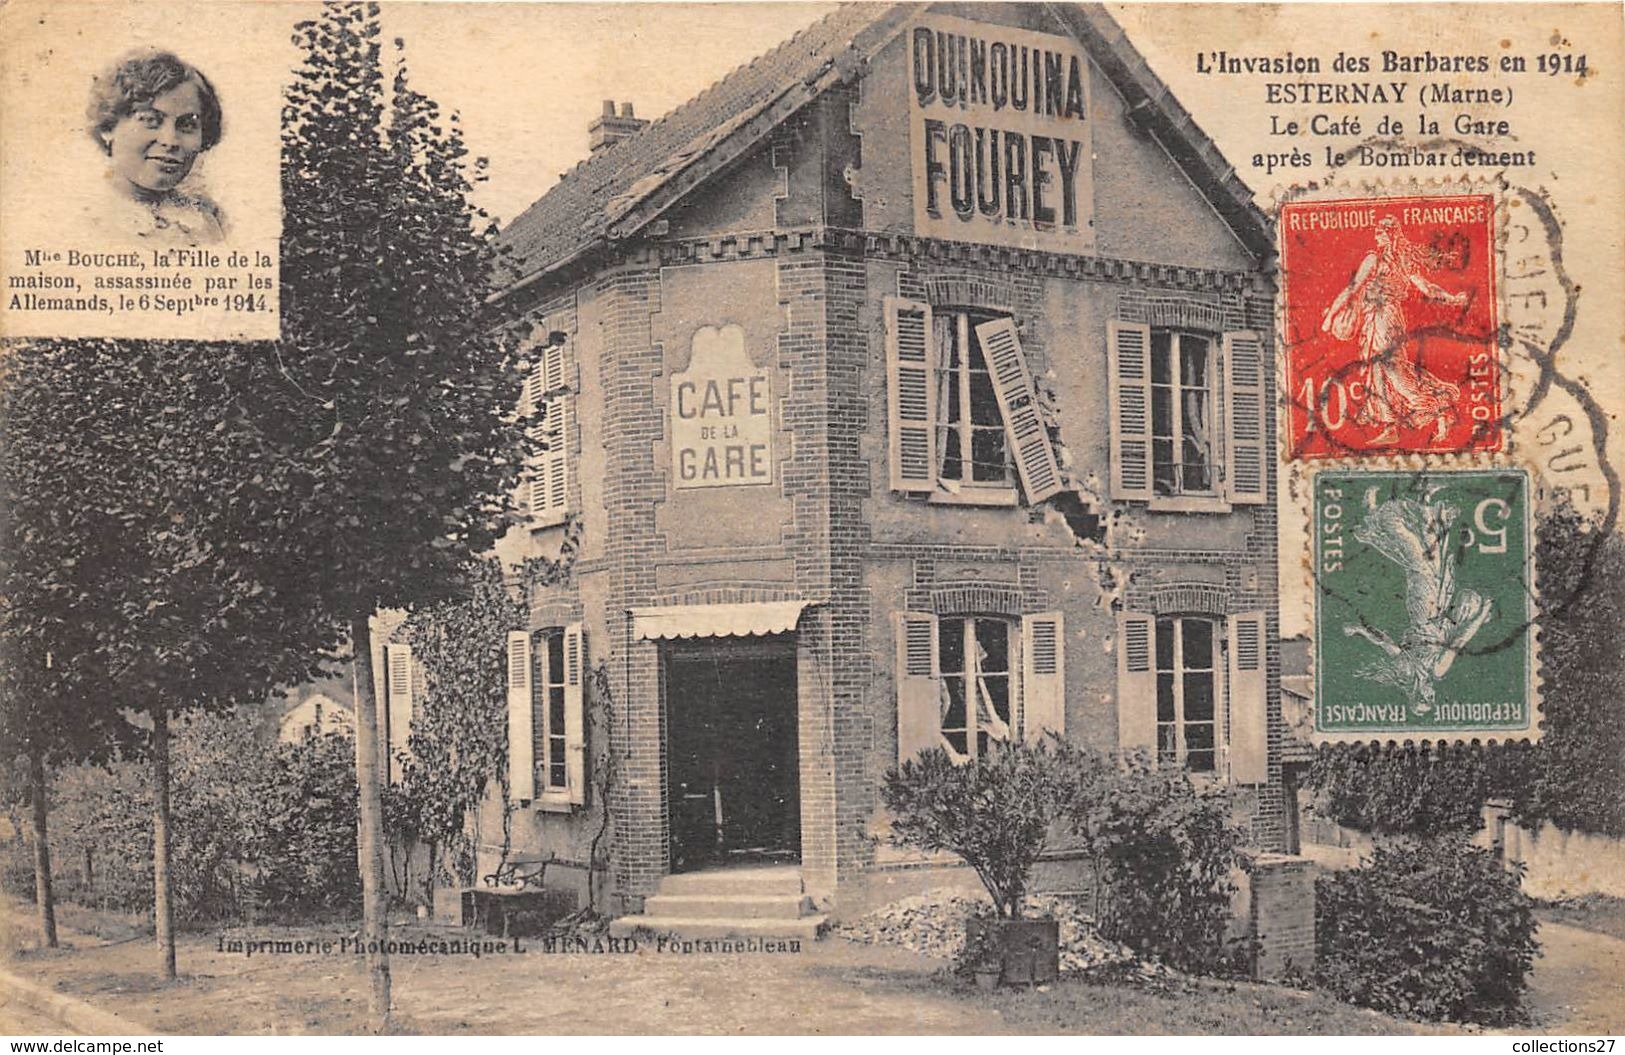 51-ESTERNAY- LE CAFE DE LA GARE, APRES LE BOMBARDEMENT  L'INVASION DES BARBARES EN 1914, Melle Bouché Assassinée - Esternay